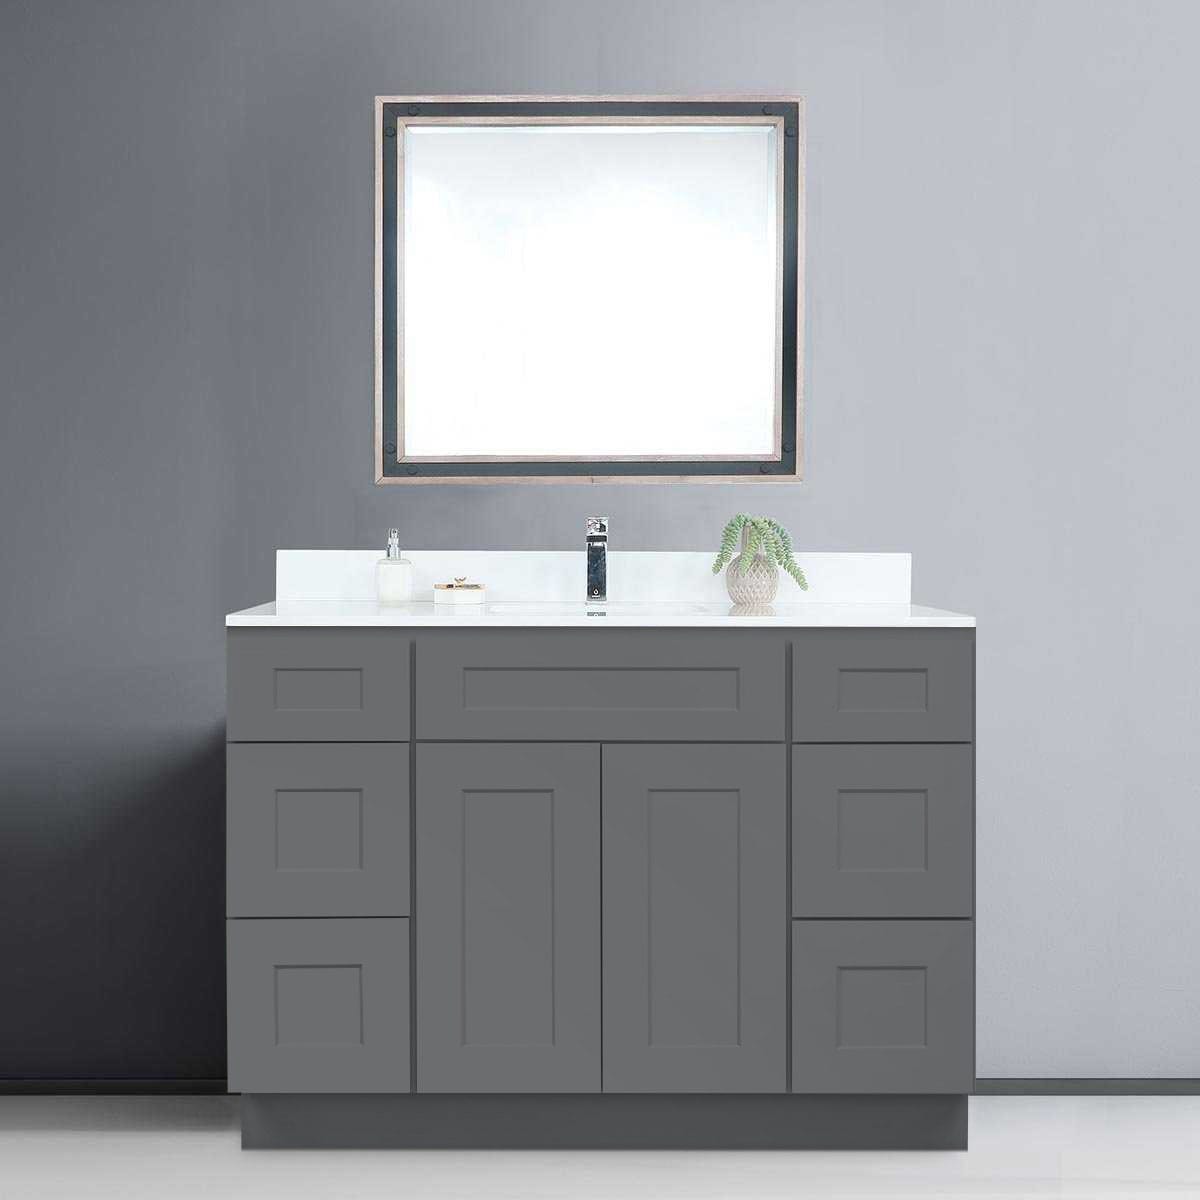 Riley & Higgs Bathroom Vanity 48 Inch Grey Shaker Single Sink Bathroom Vanity with Drawers